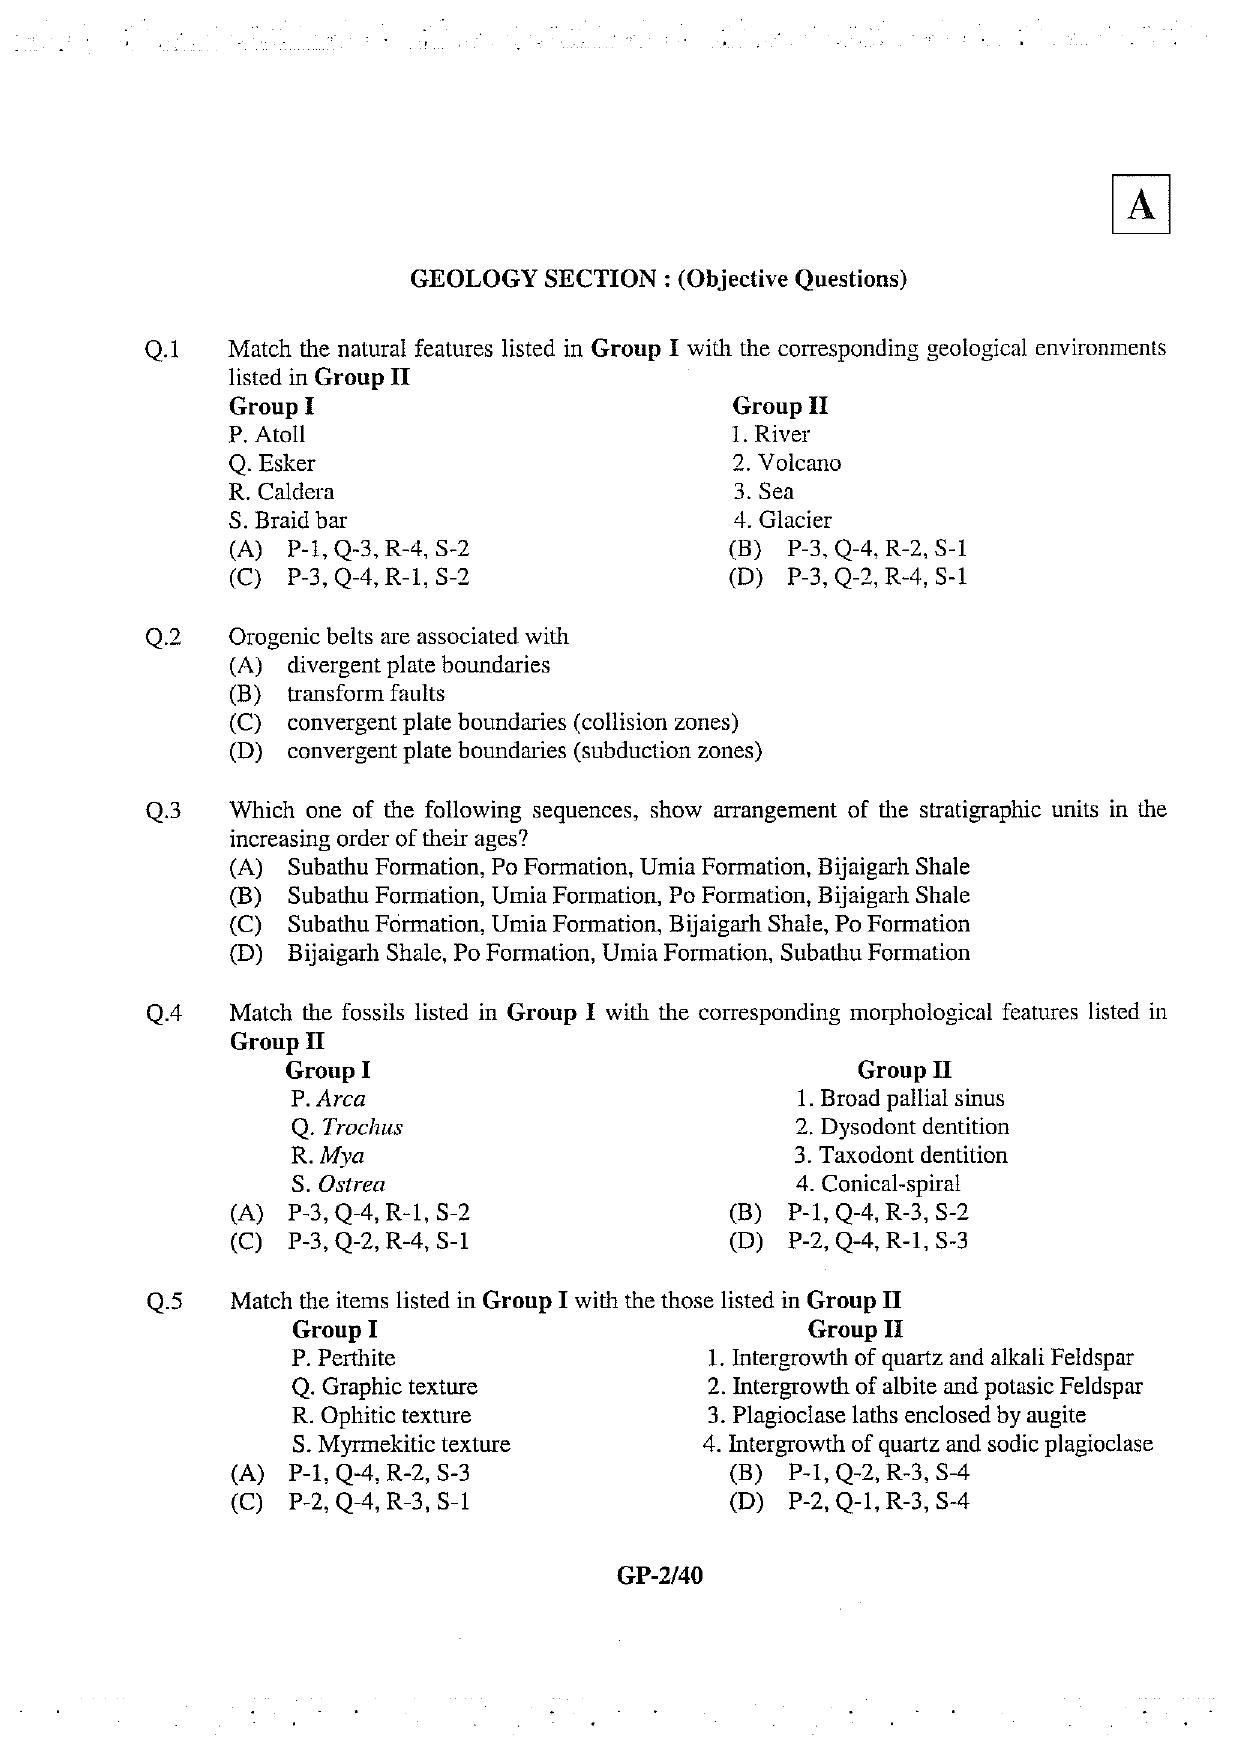 JAM 2013: GP Question Paper - Page 3